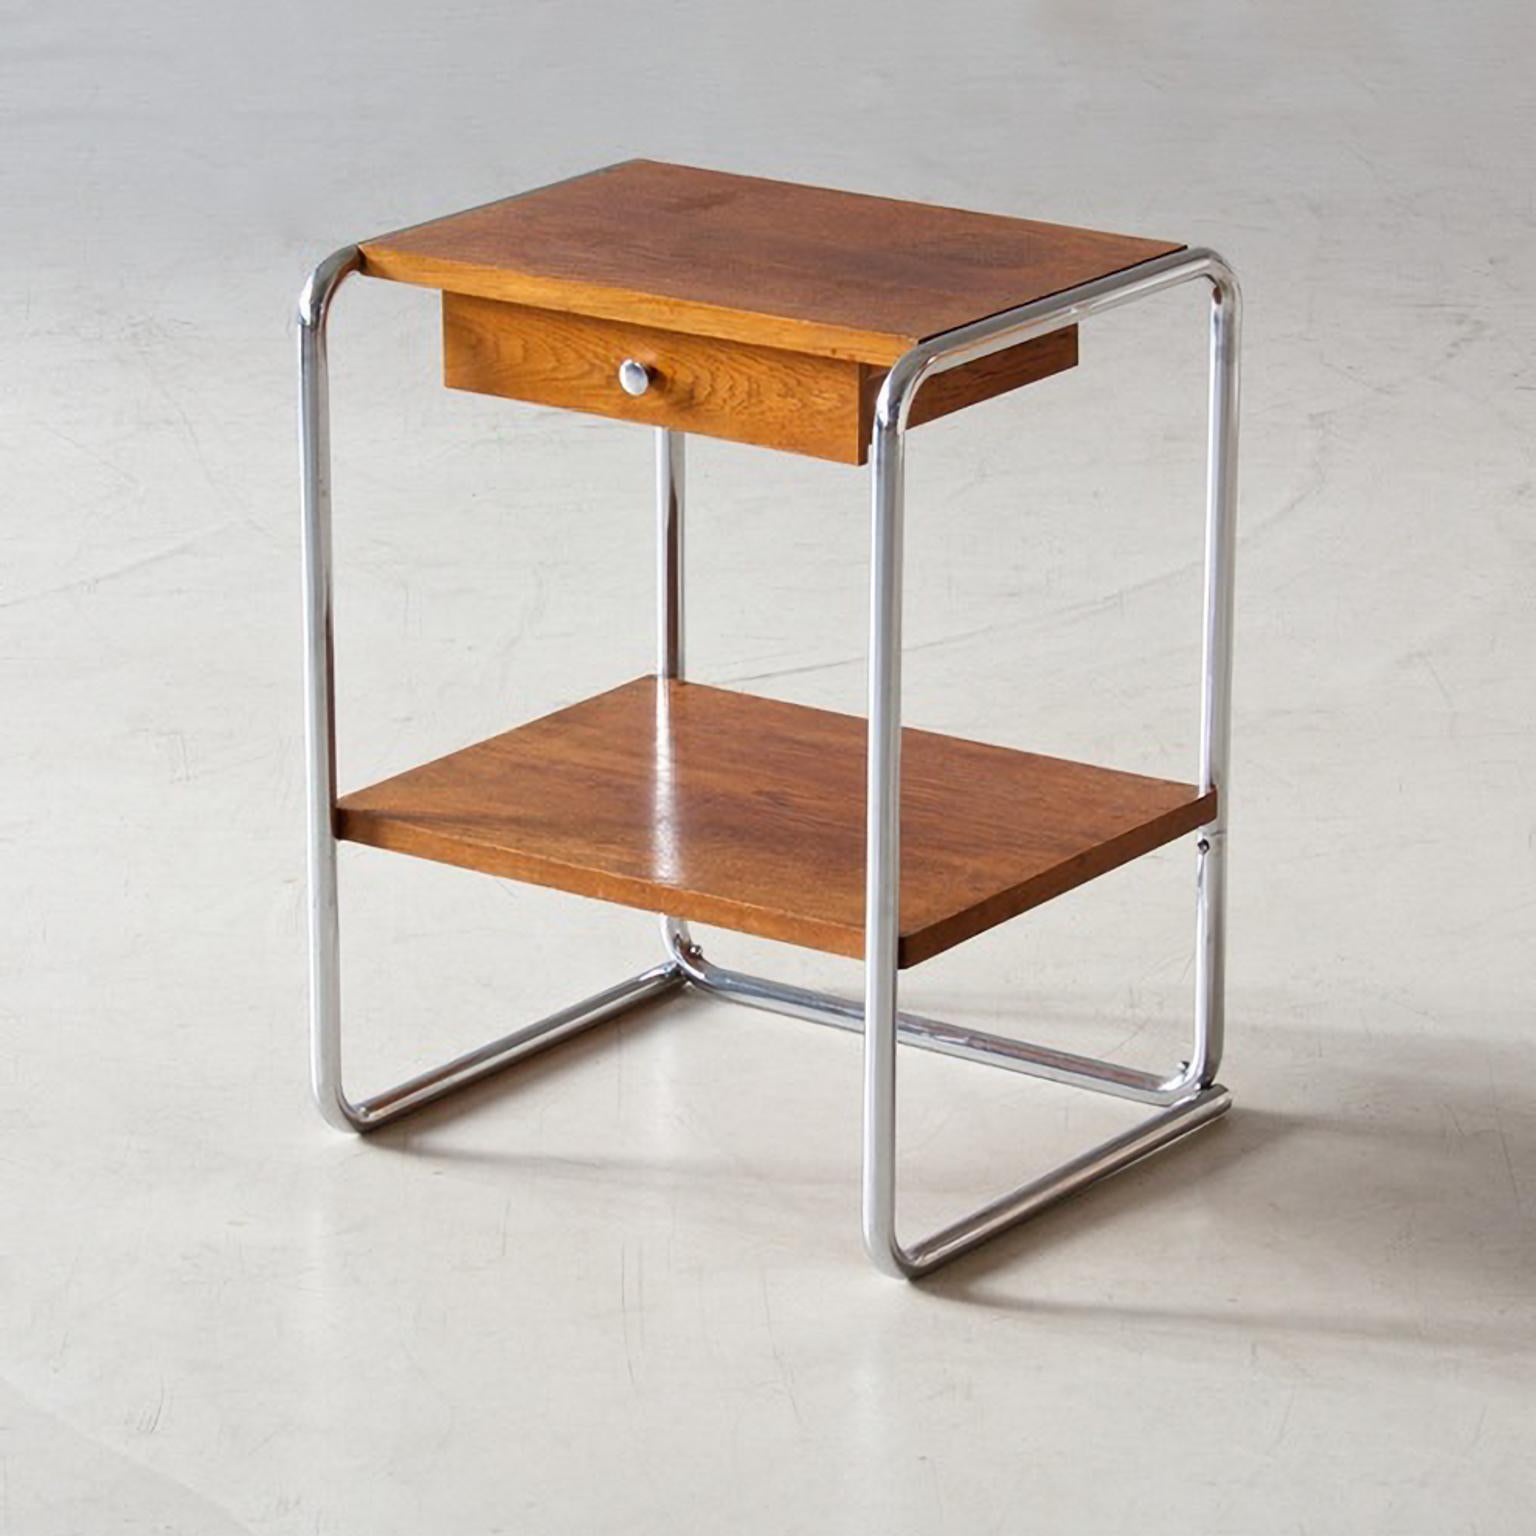 Bauhaus verchromter Stahlrohrtisch mit einer Schublade. Dieses Tischmodell T9 wurde von Thonet entworfen und hergestellt, um 1930

Dieser Artikel wird auf Anfrage restauriert und ist in verschiedenen Mengen erhältlich.
Lieferfrist 8-10 Wochen.